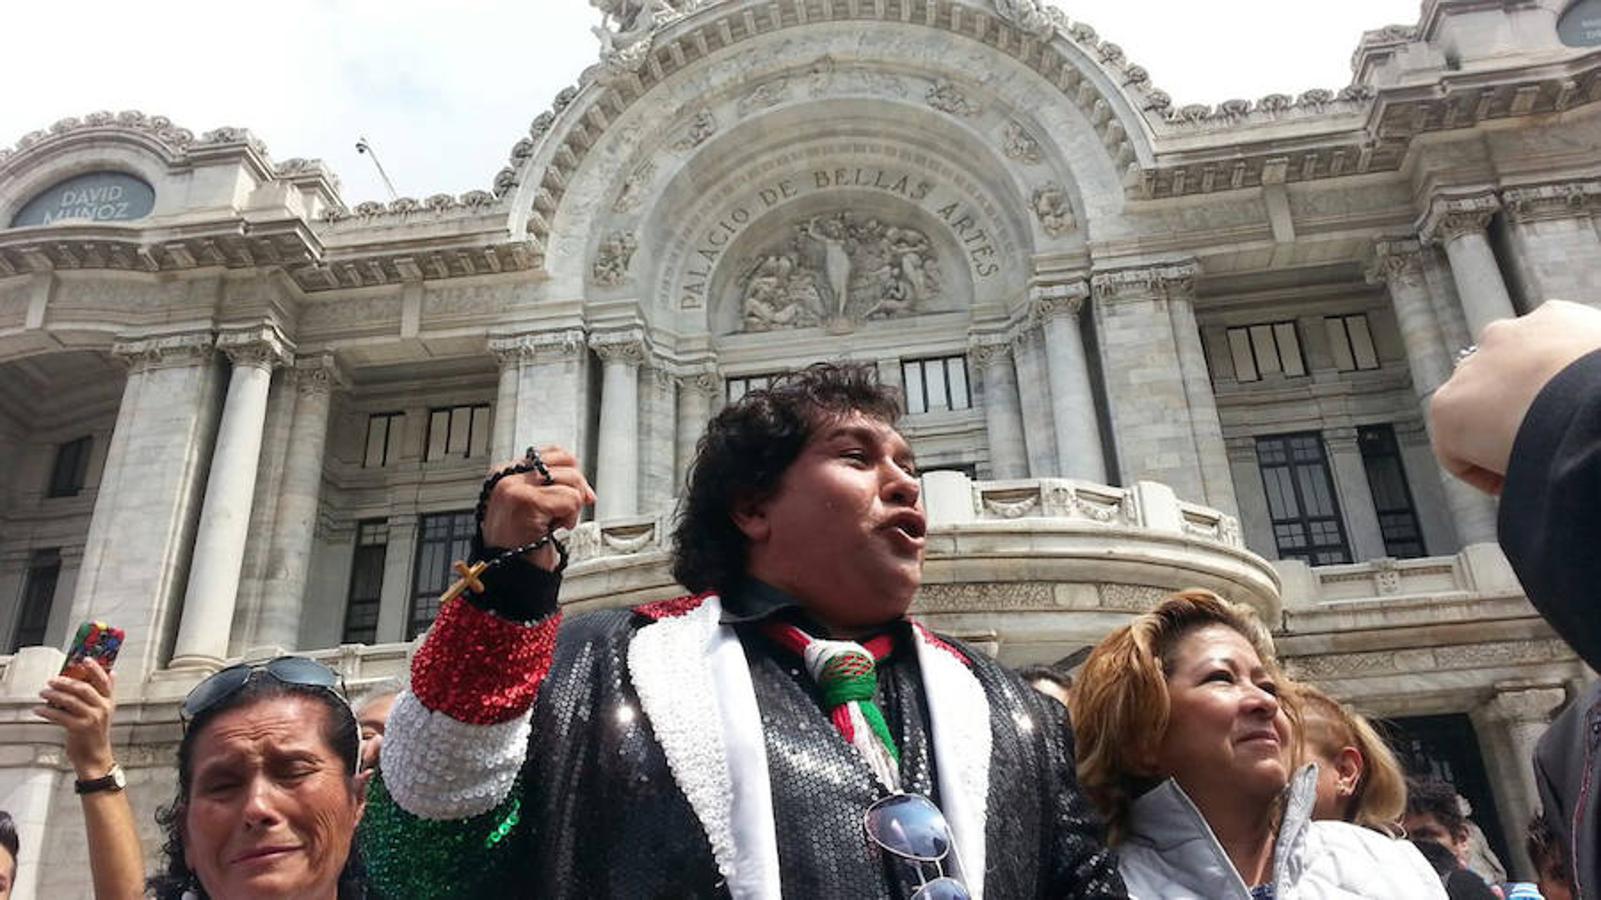 Un hombre vestido al estilo del fallecido cantautor mexicano Juan Gabriel canta junto a cientos de personas que lloran y entonan sus canciones a las afueras de Palacio de Bellas Artes, en Ciudad de México